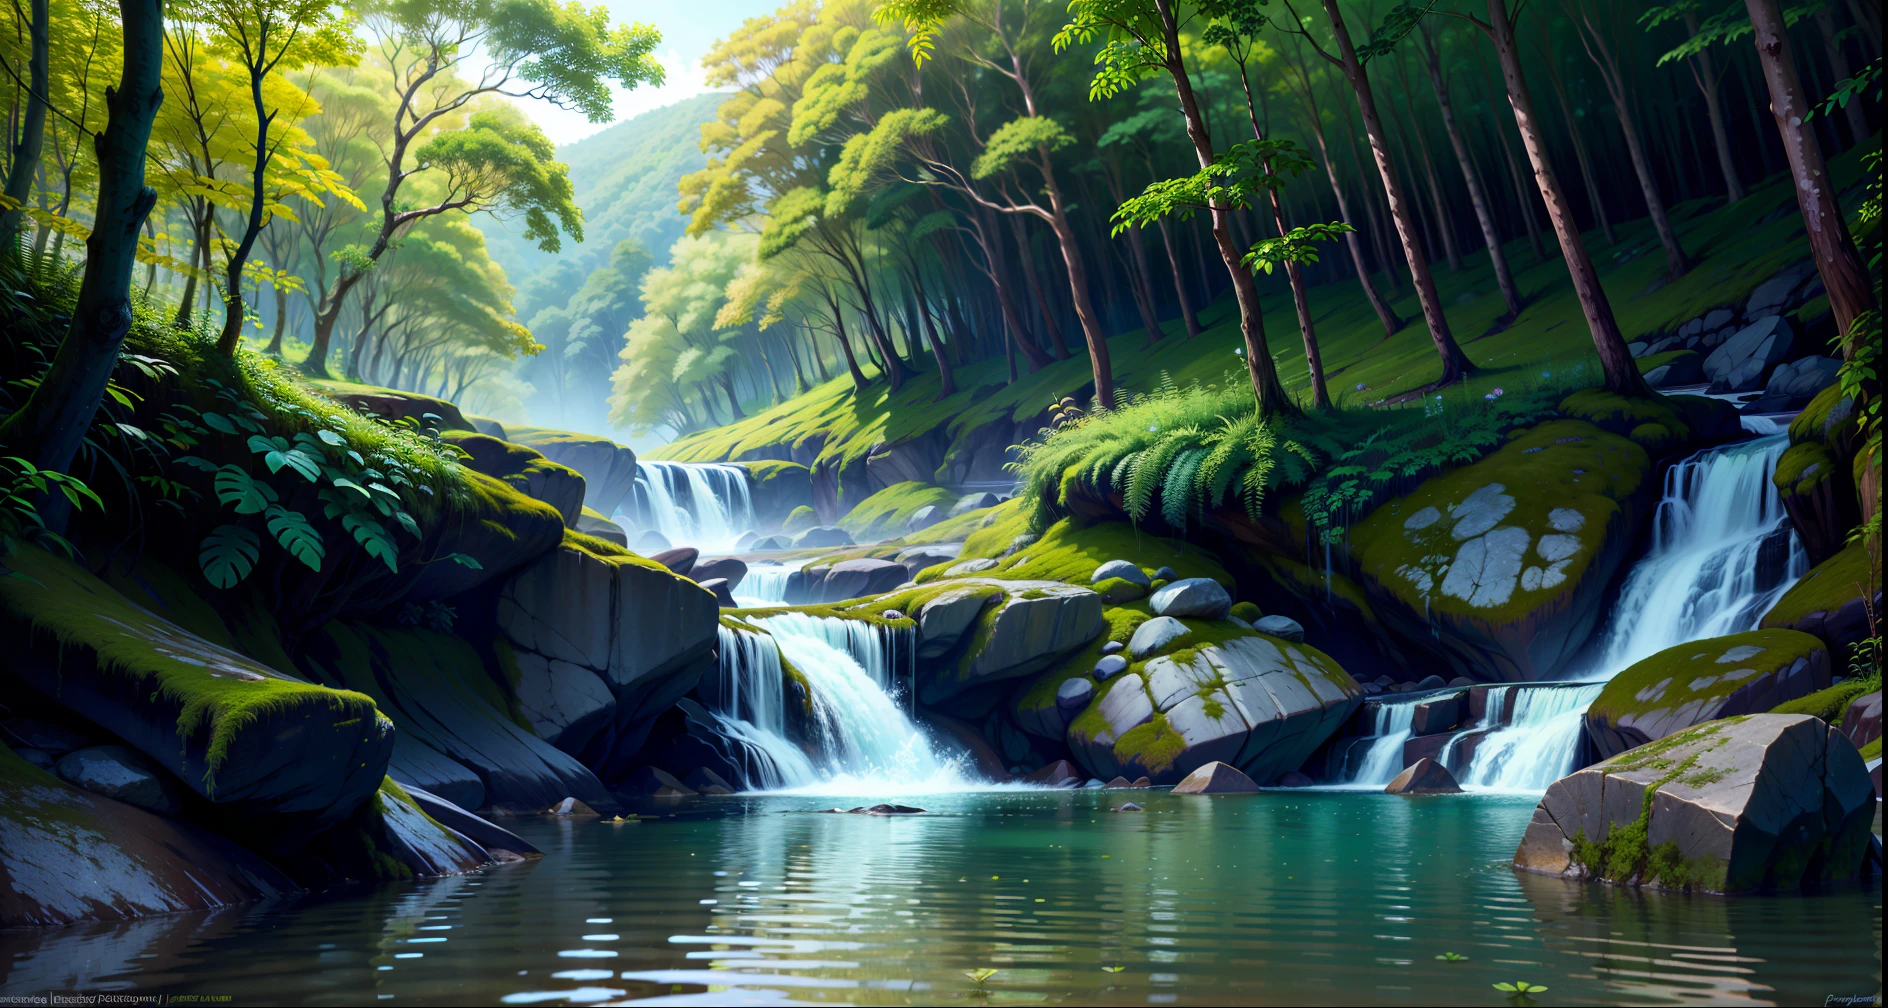 (uma paisagem surrealista, cores vibrantes), uma cena animada, no fundo da floresta, água cristalina, folhagem densa, focalizado cachoeira, com profundidade de campo limitada.